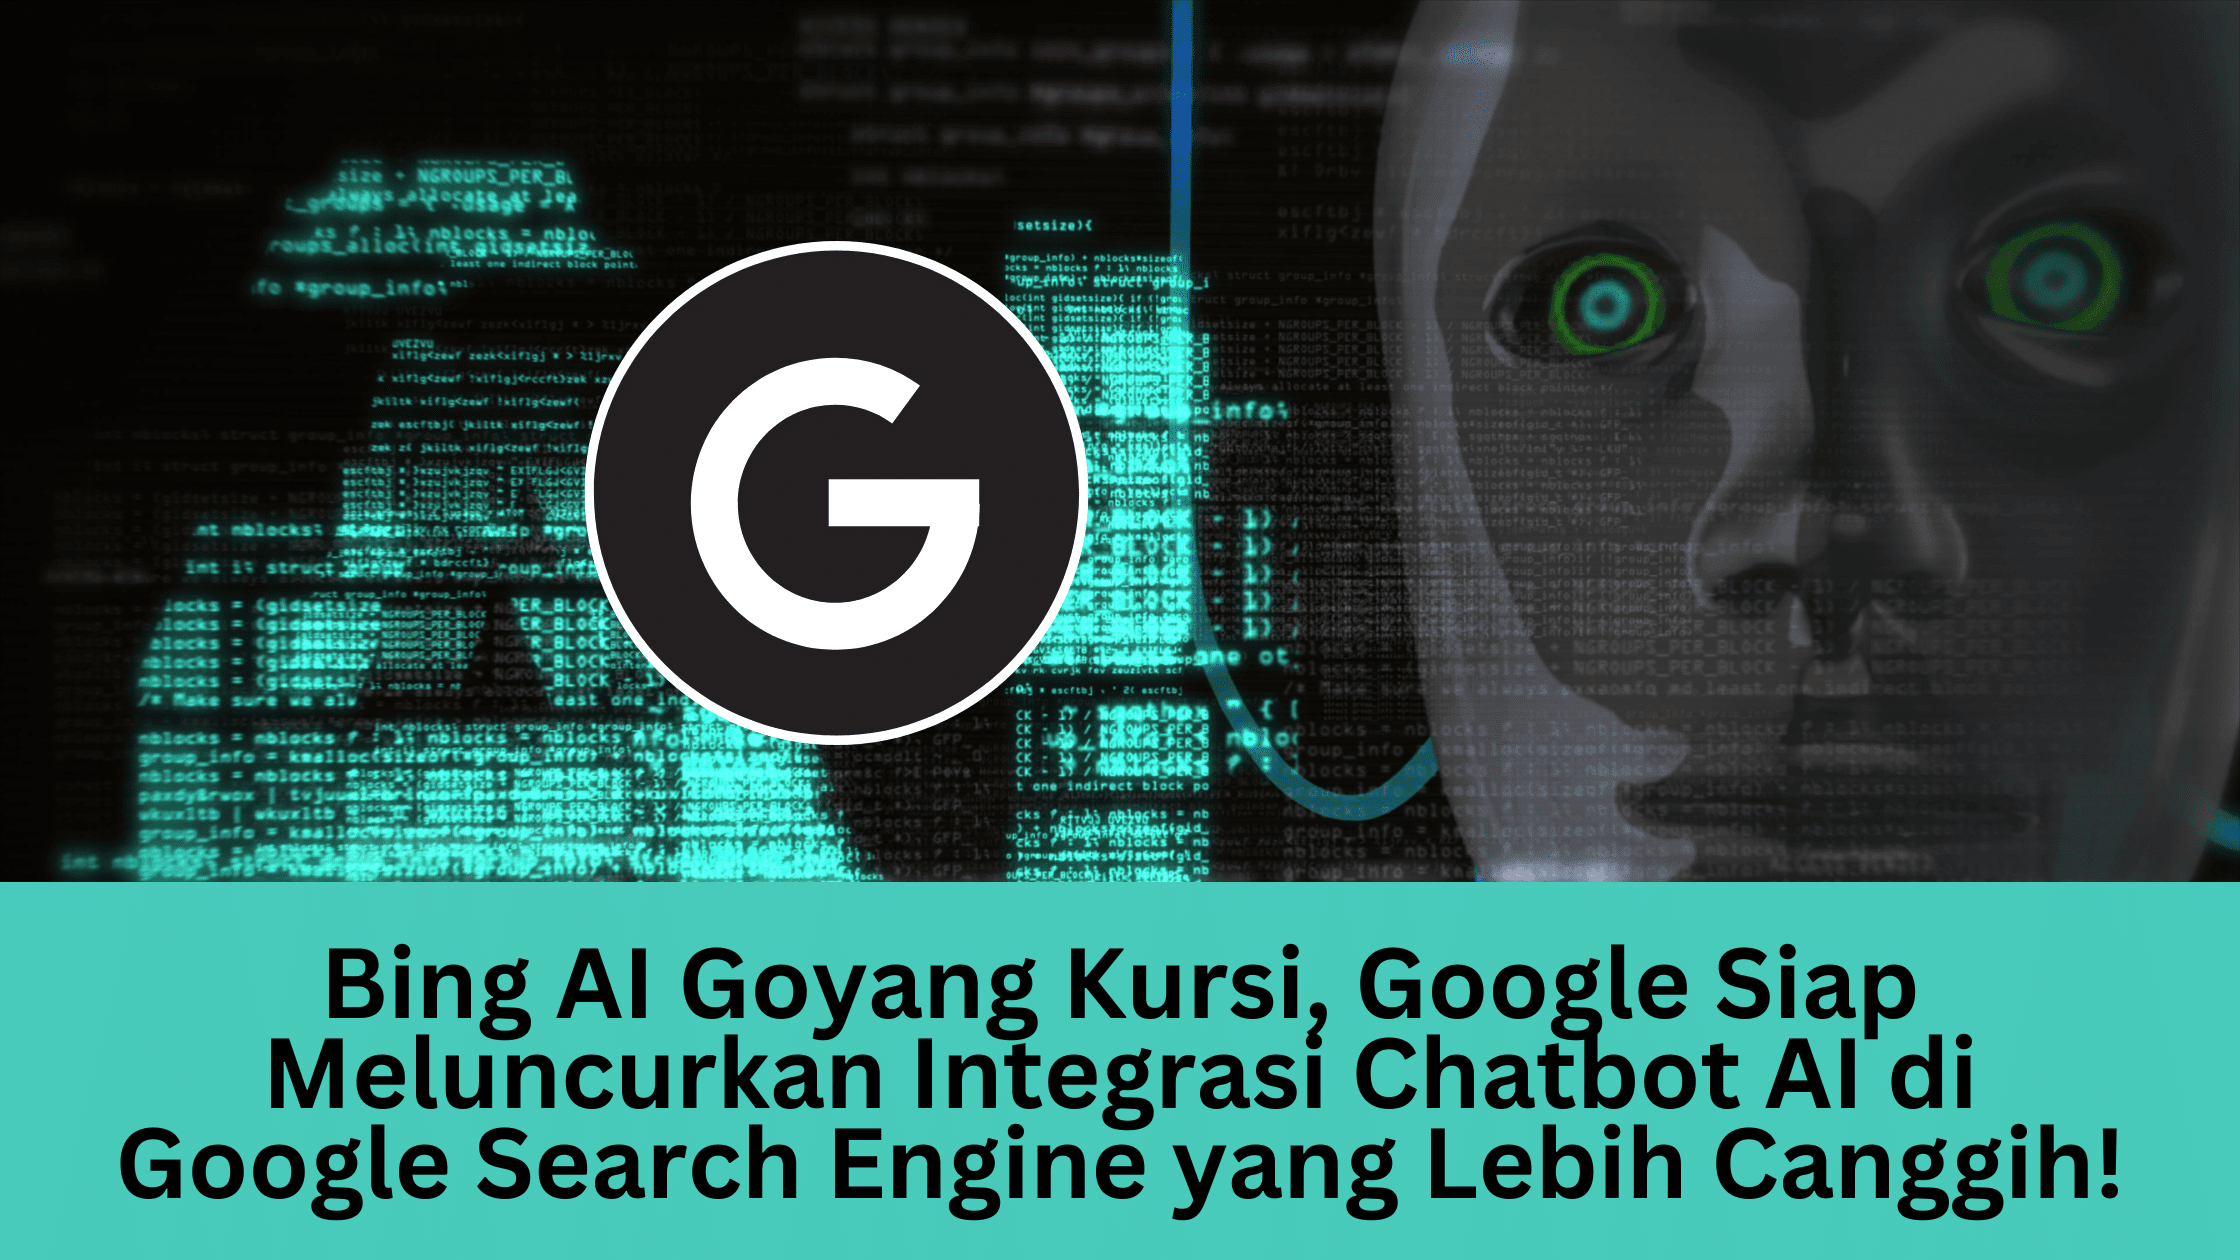 Bing AI Goyang Kursi, Google Siap Meluncurkan Integrasi Chatbot AI di Google Search Engine yang Lebih Canggih!